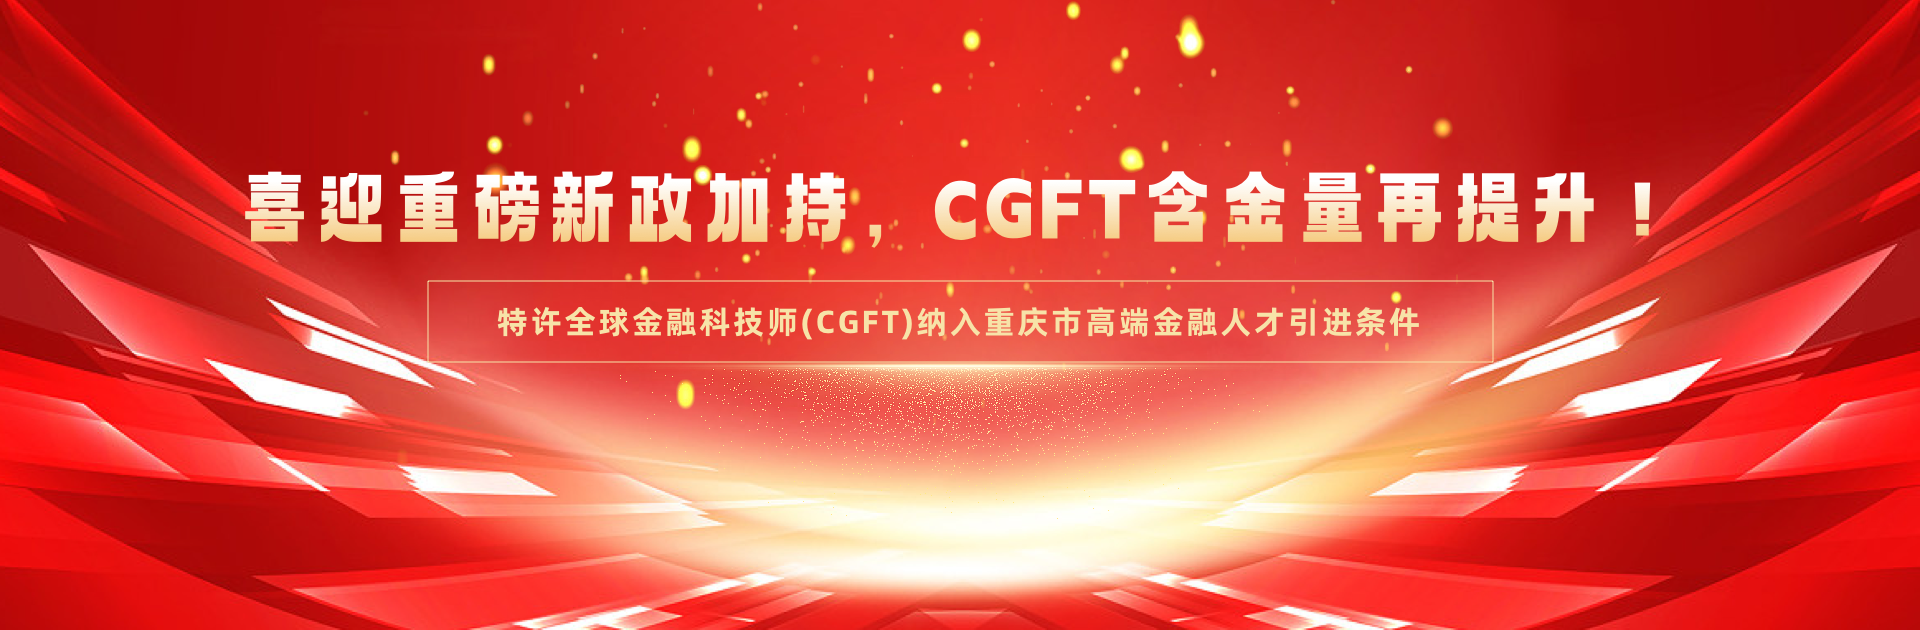 特许全球金融科技师(CGFT)纳入重庆市高端金融人才引进条件